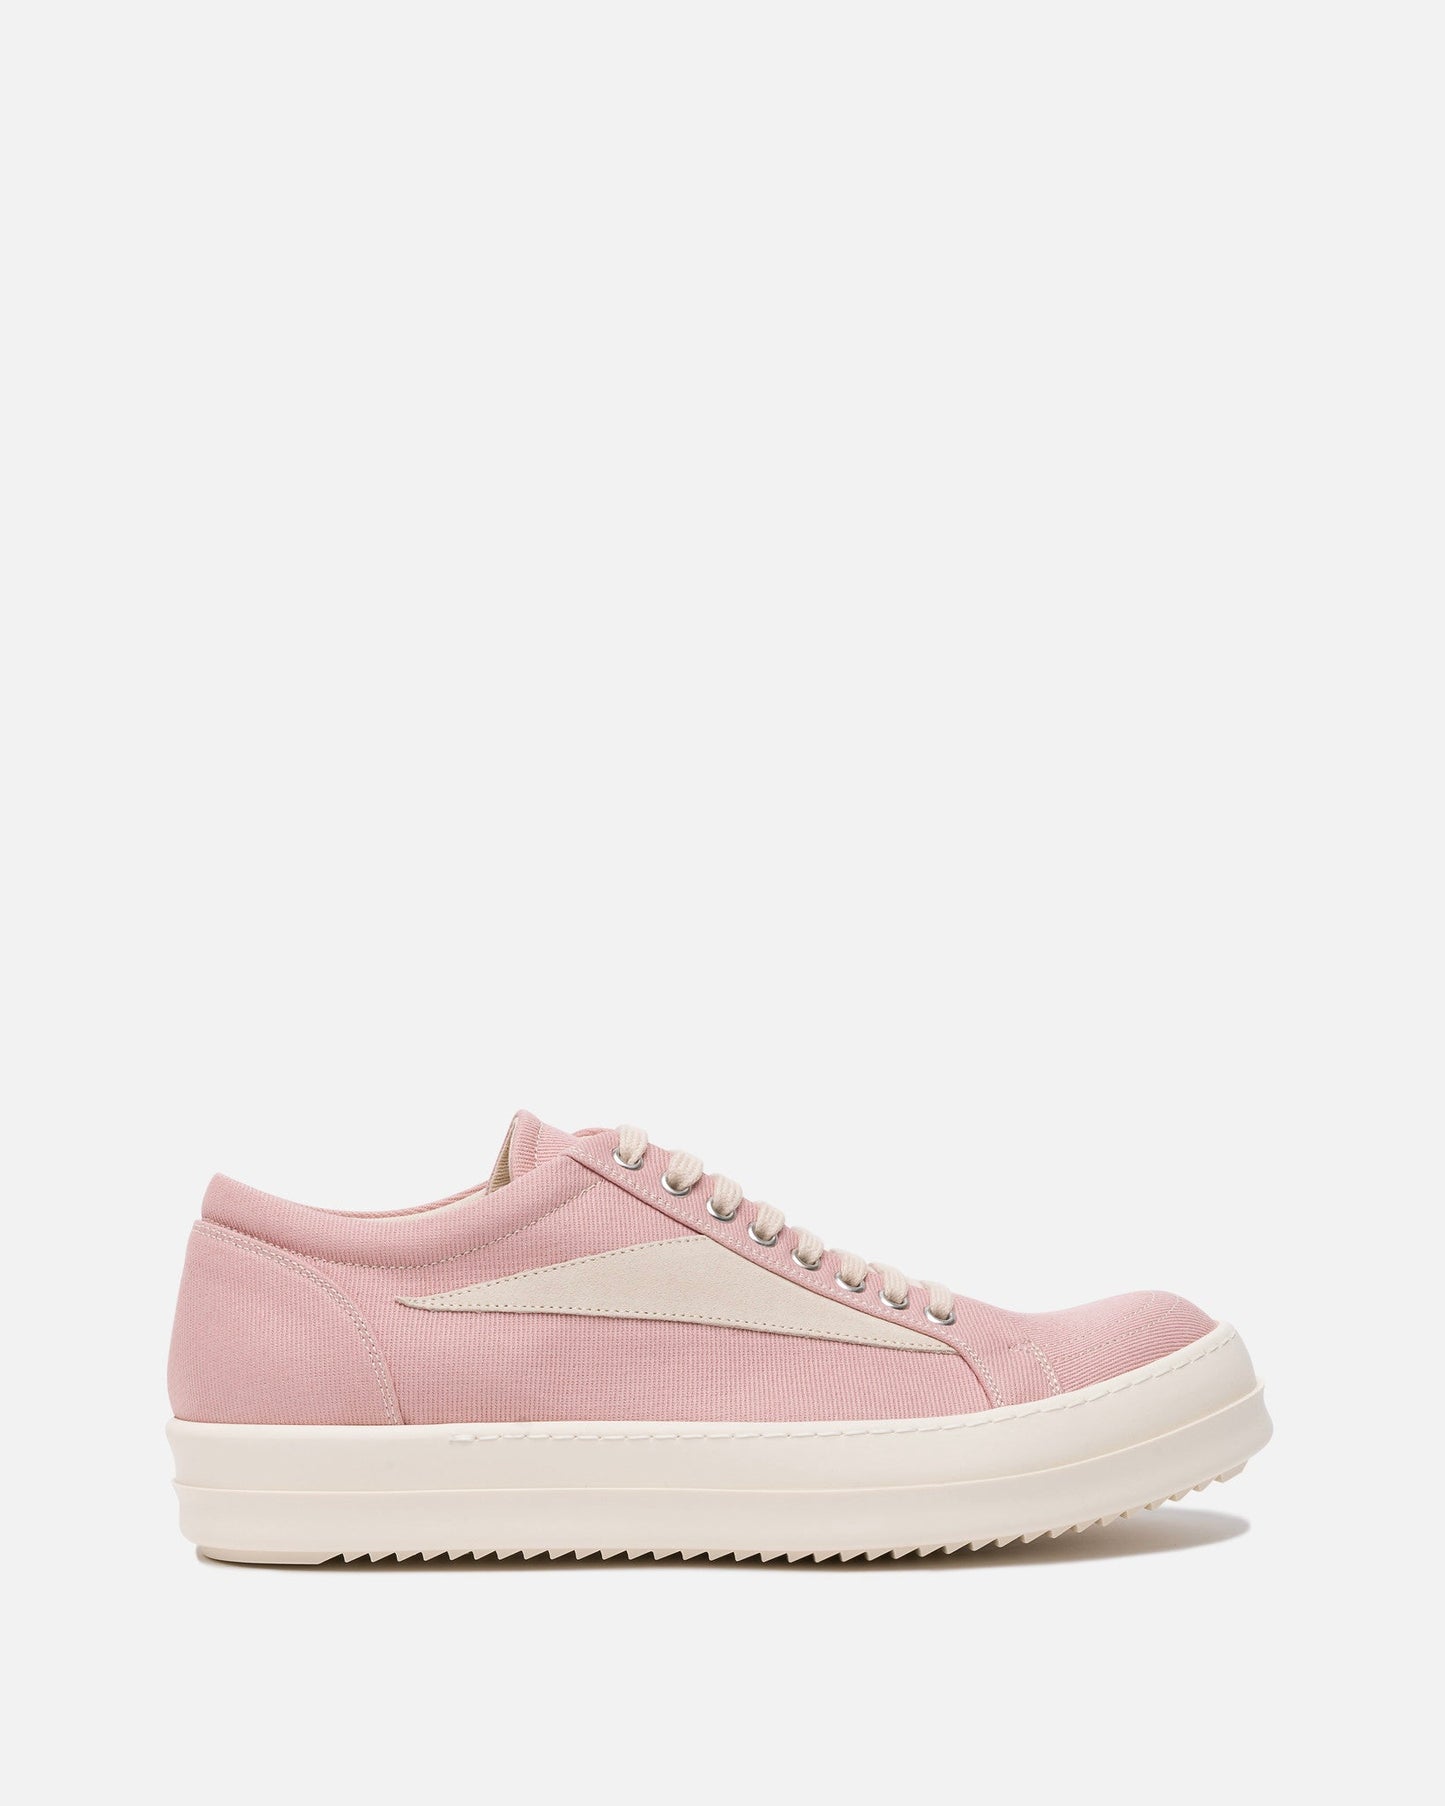 Rick Owens Men's Sneakers Denim Vintage Sneakers in Faded Pink/Pearl